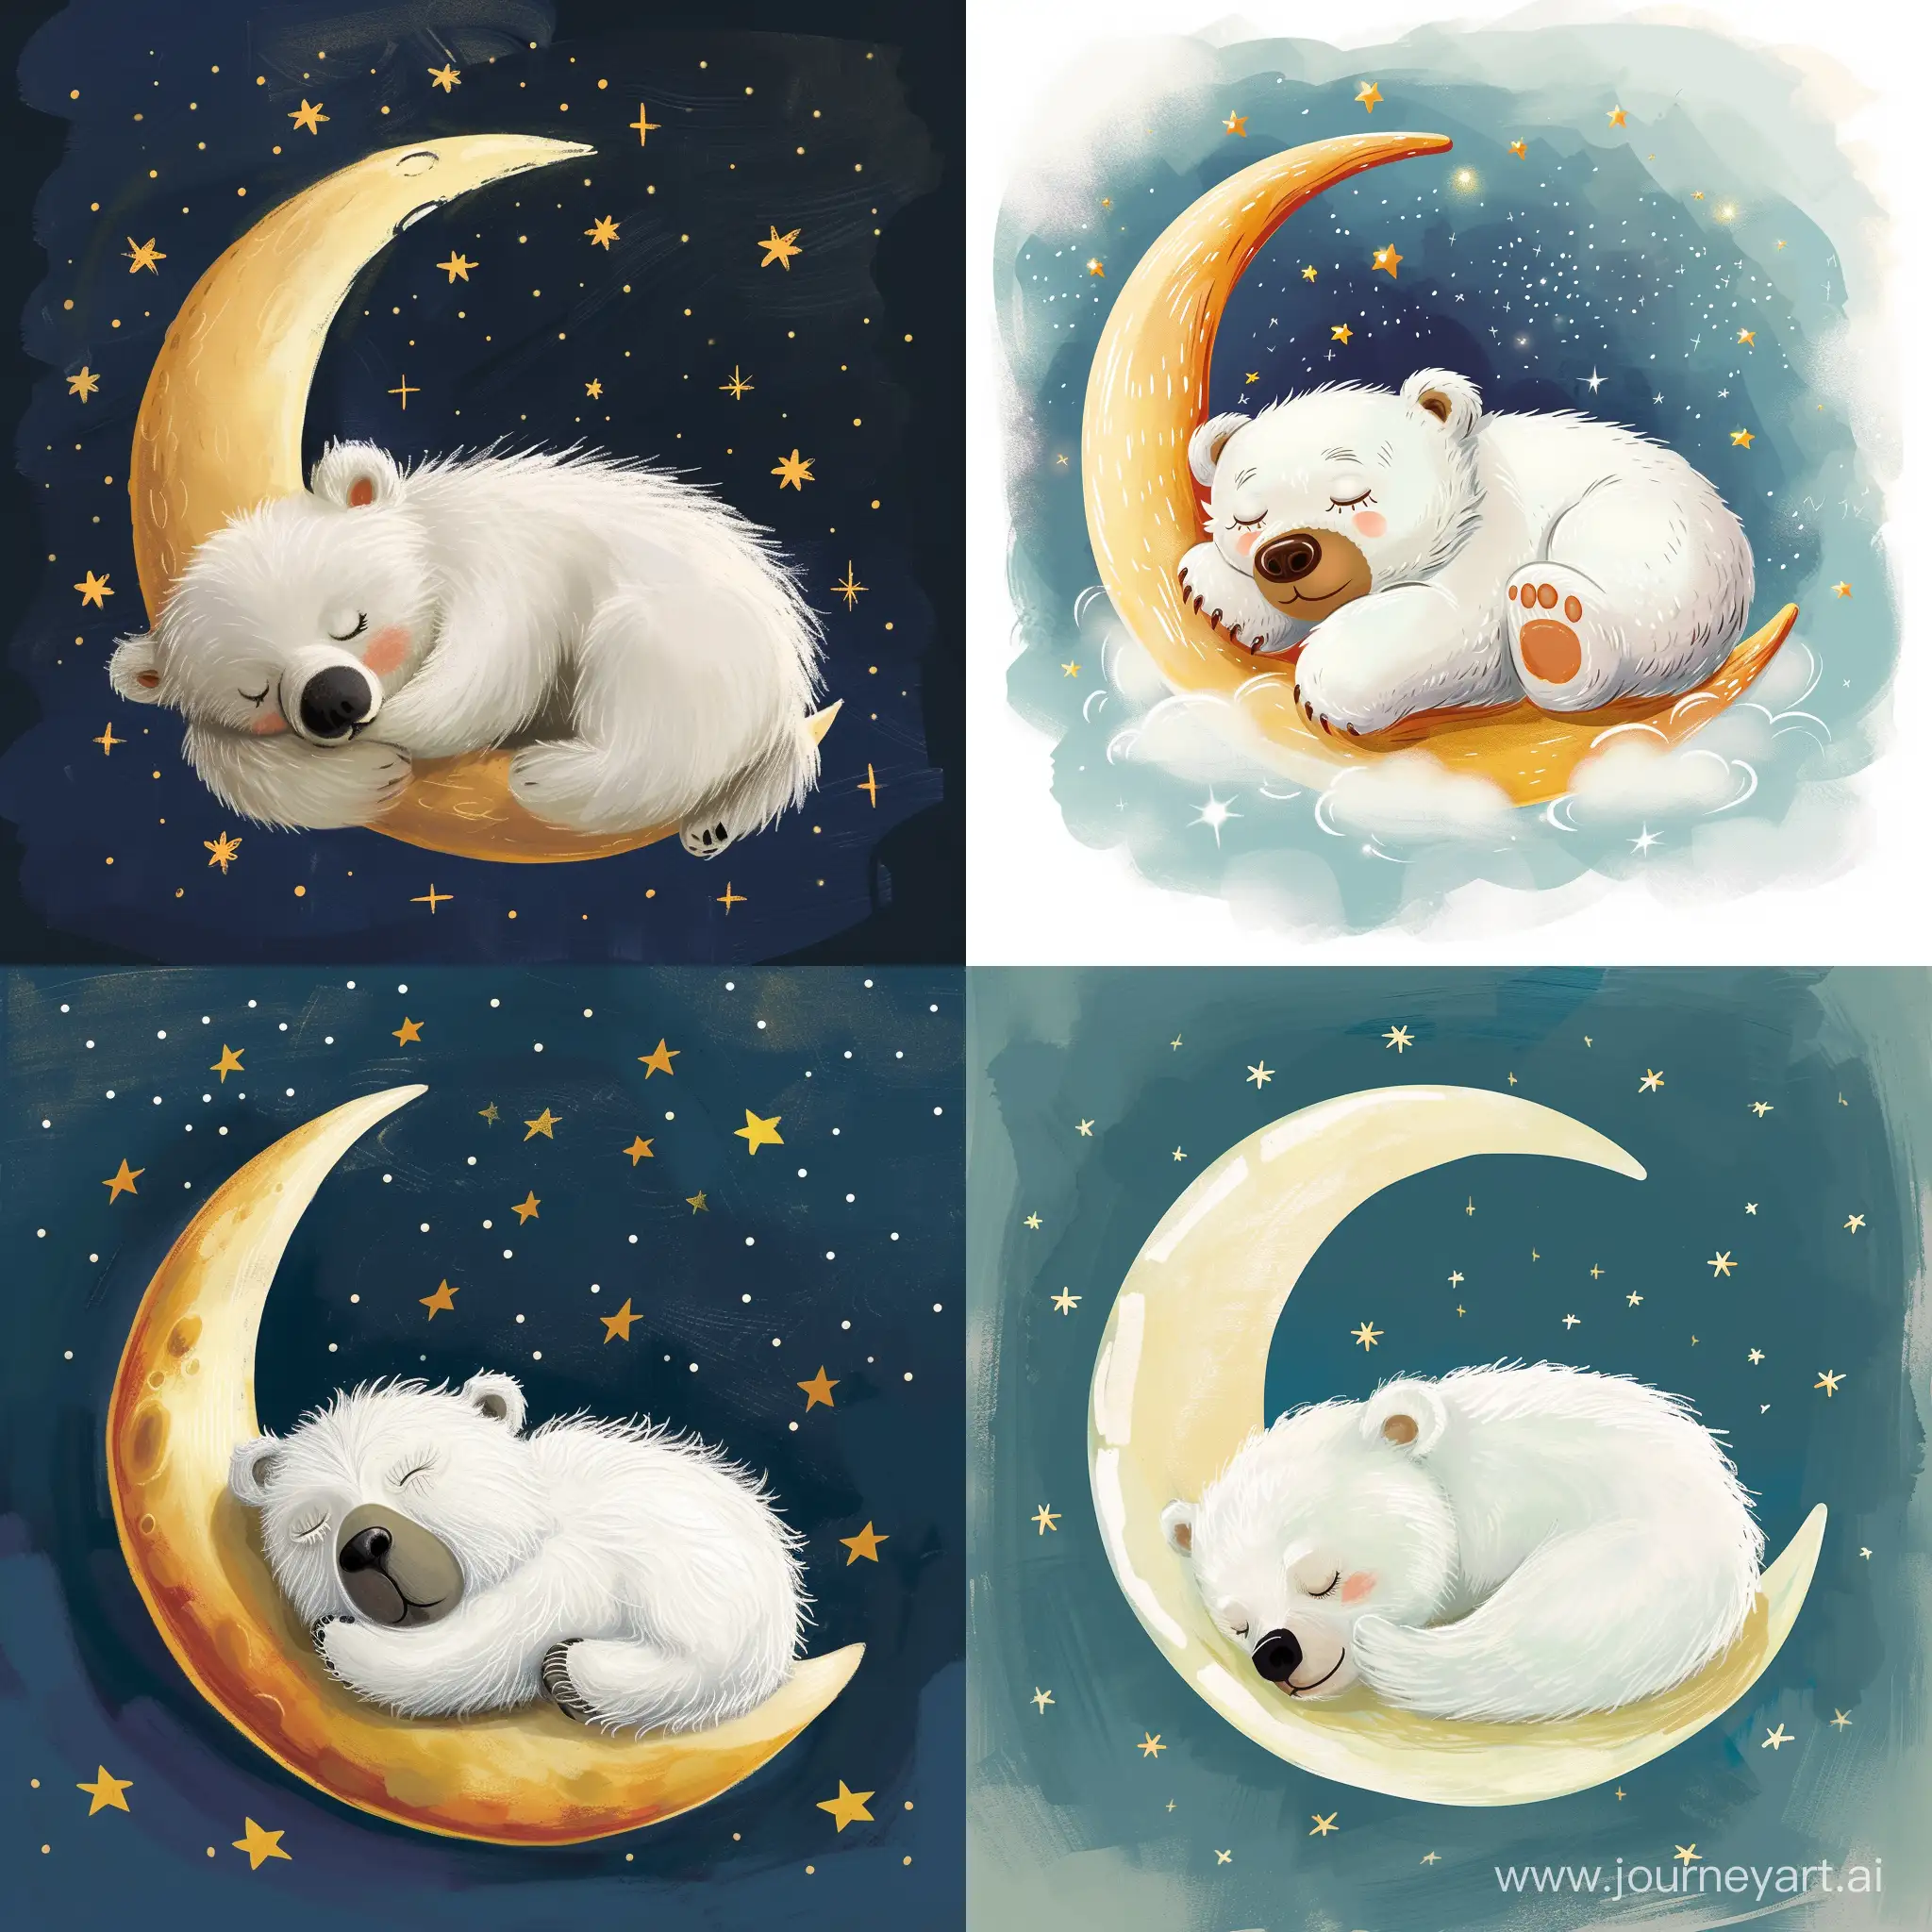 белый медвежонок с большой мордочкой спит на полумесяце, звёзды детская иллюстрация, сказочно